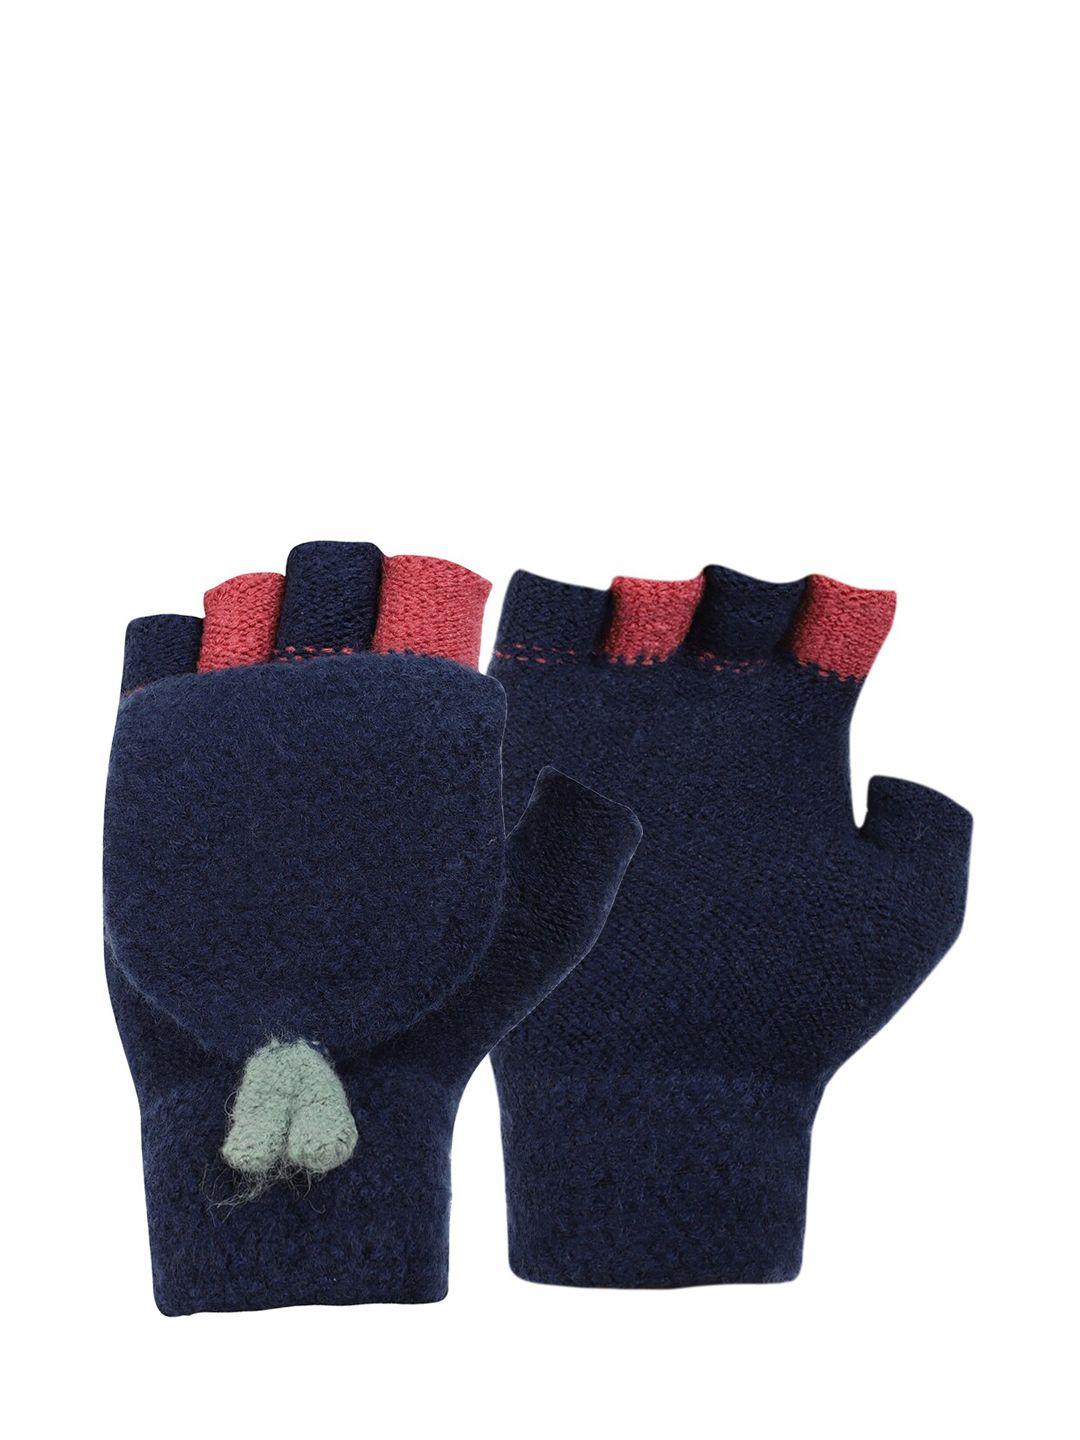 ellis blue & orange patterned 2 in 1 gloves